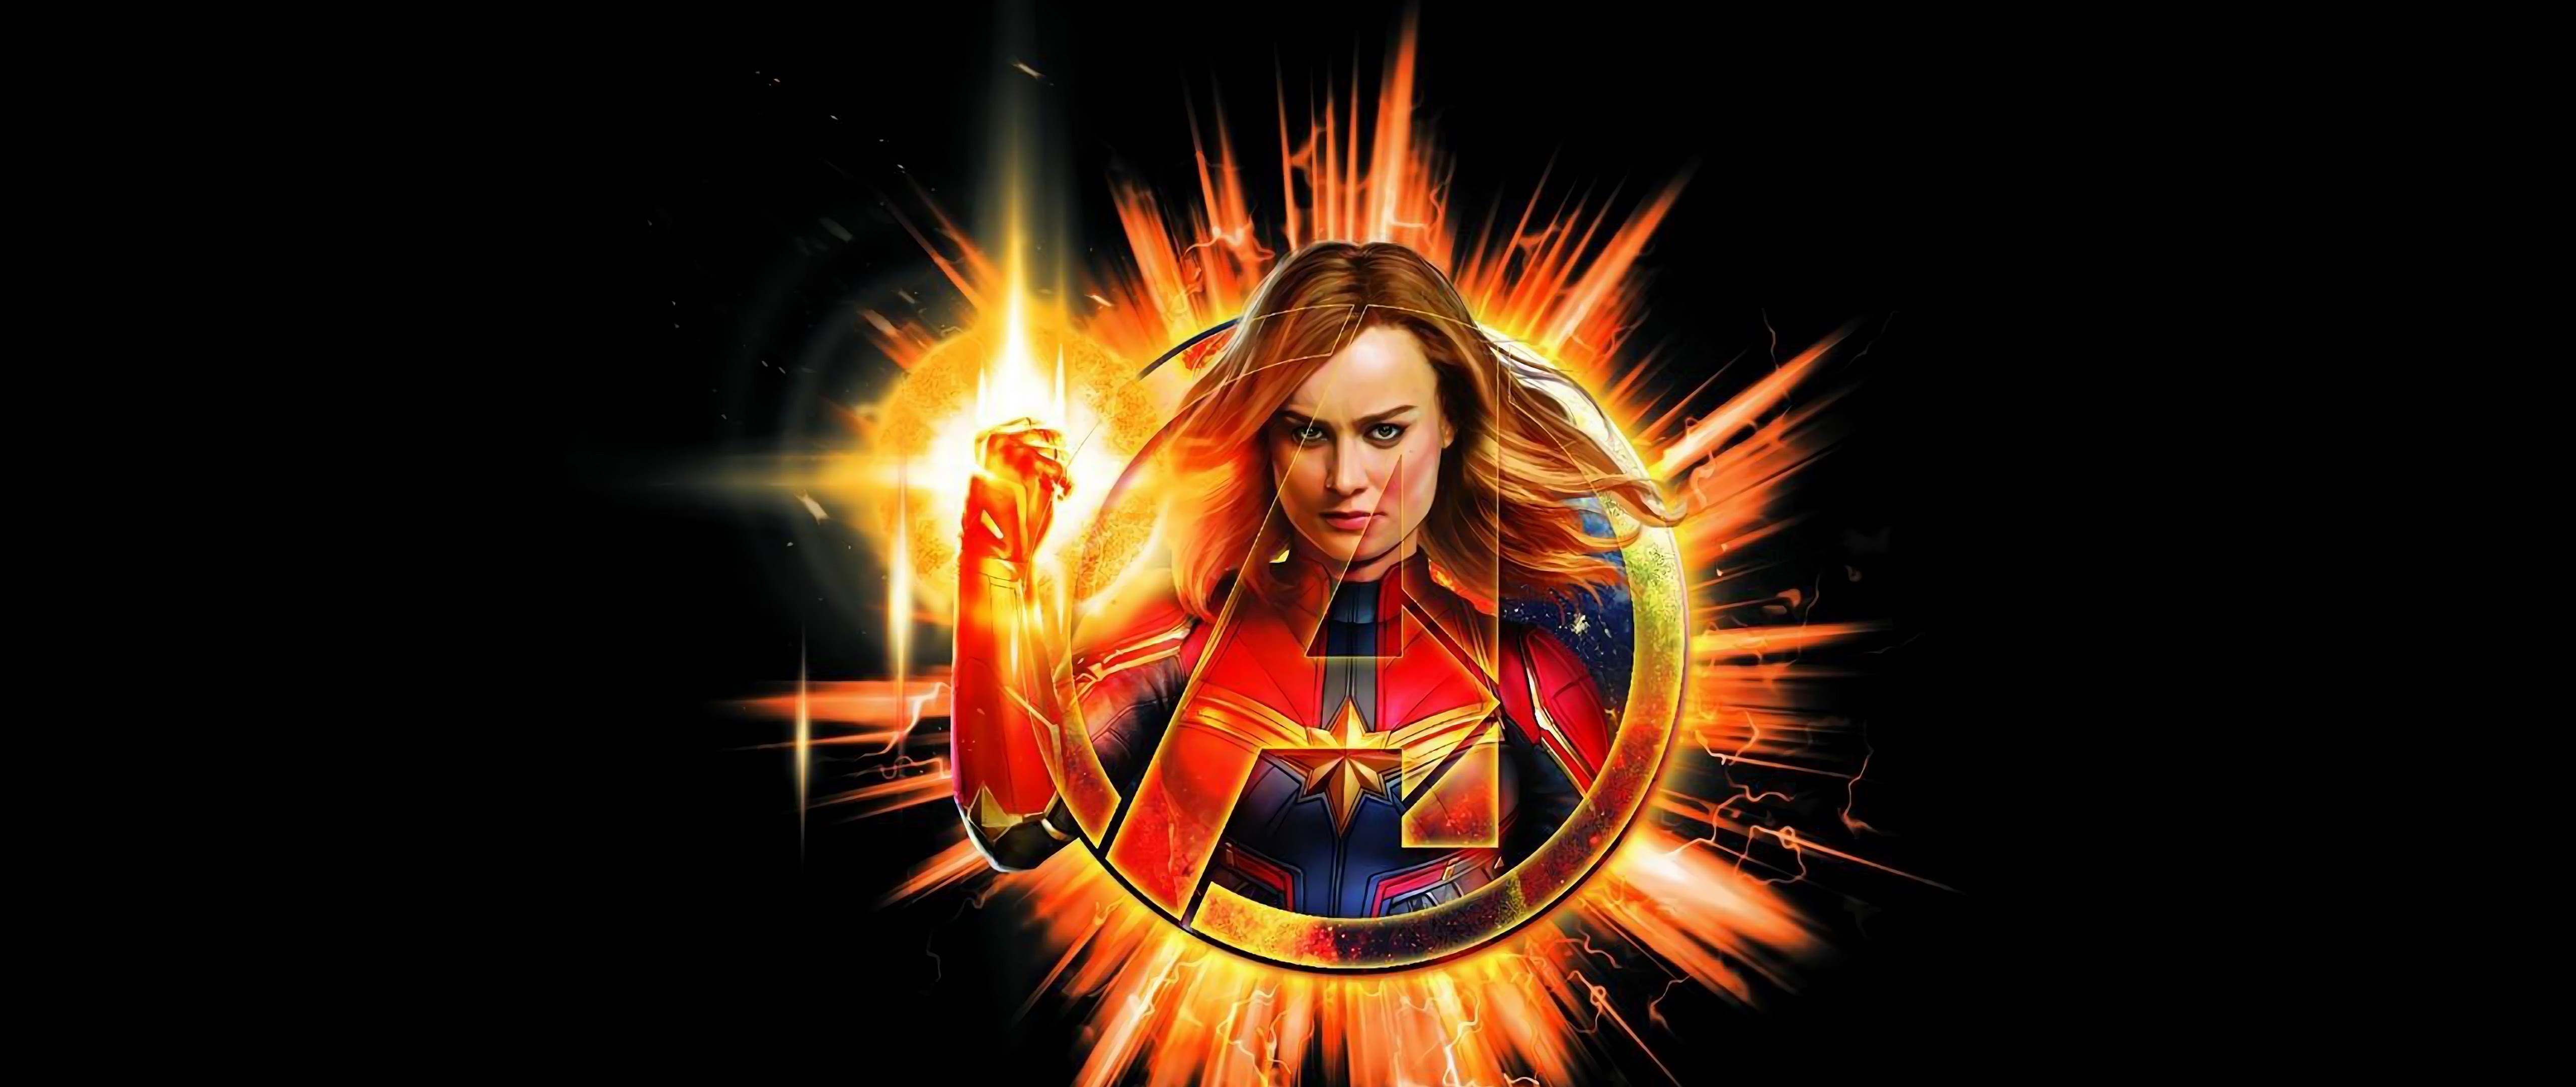 Avengers: Endgame Captain Marvel 4K Wallpaper